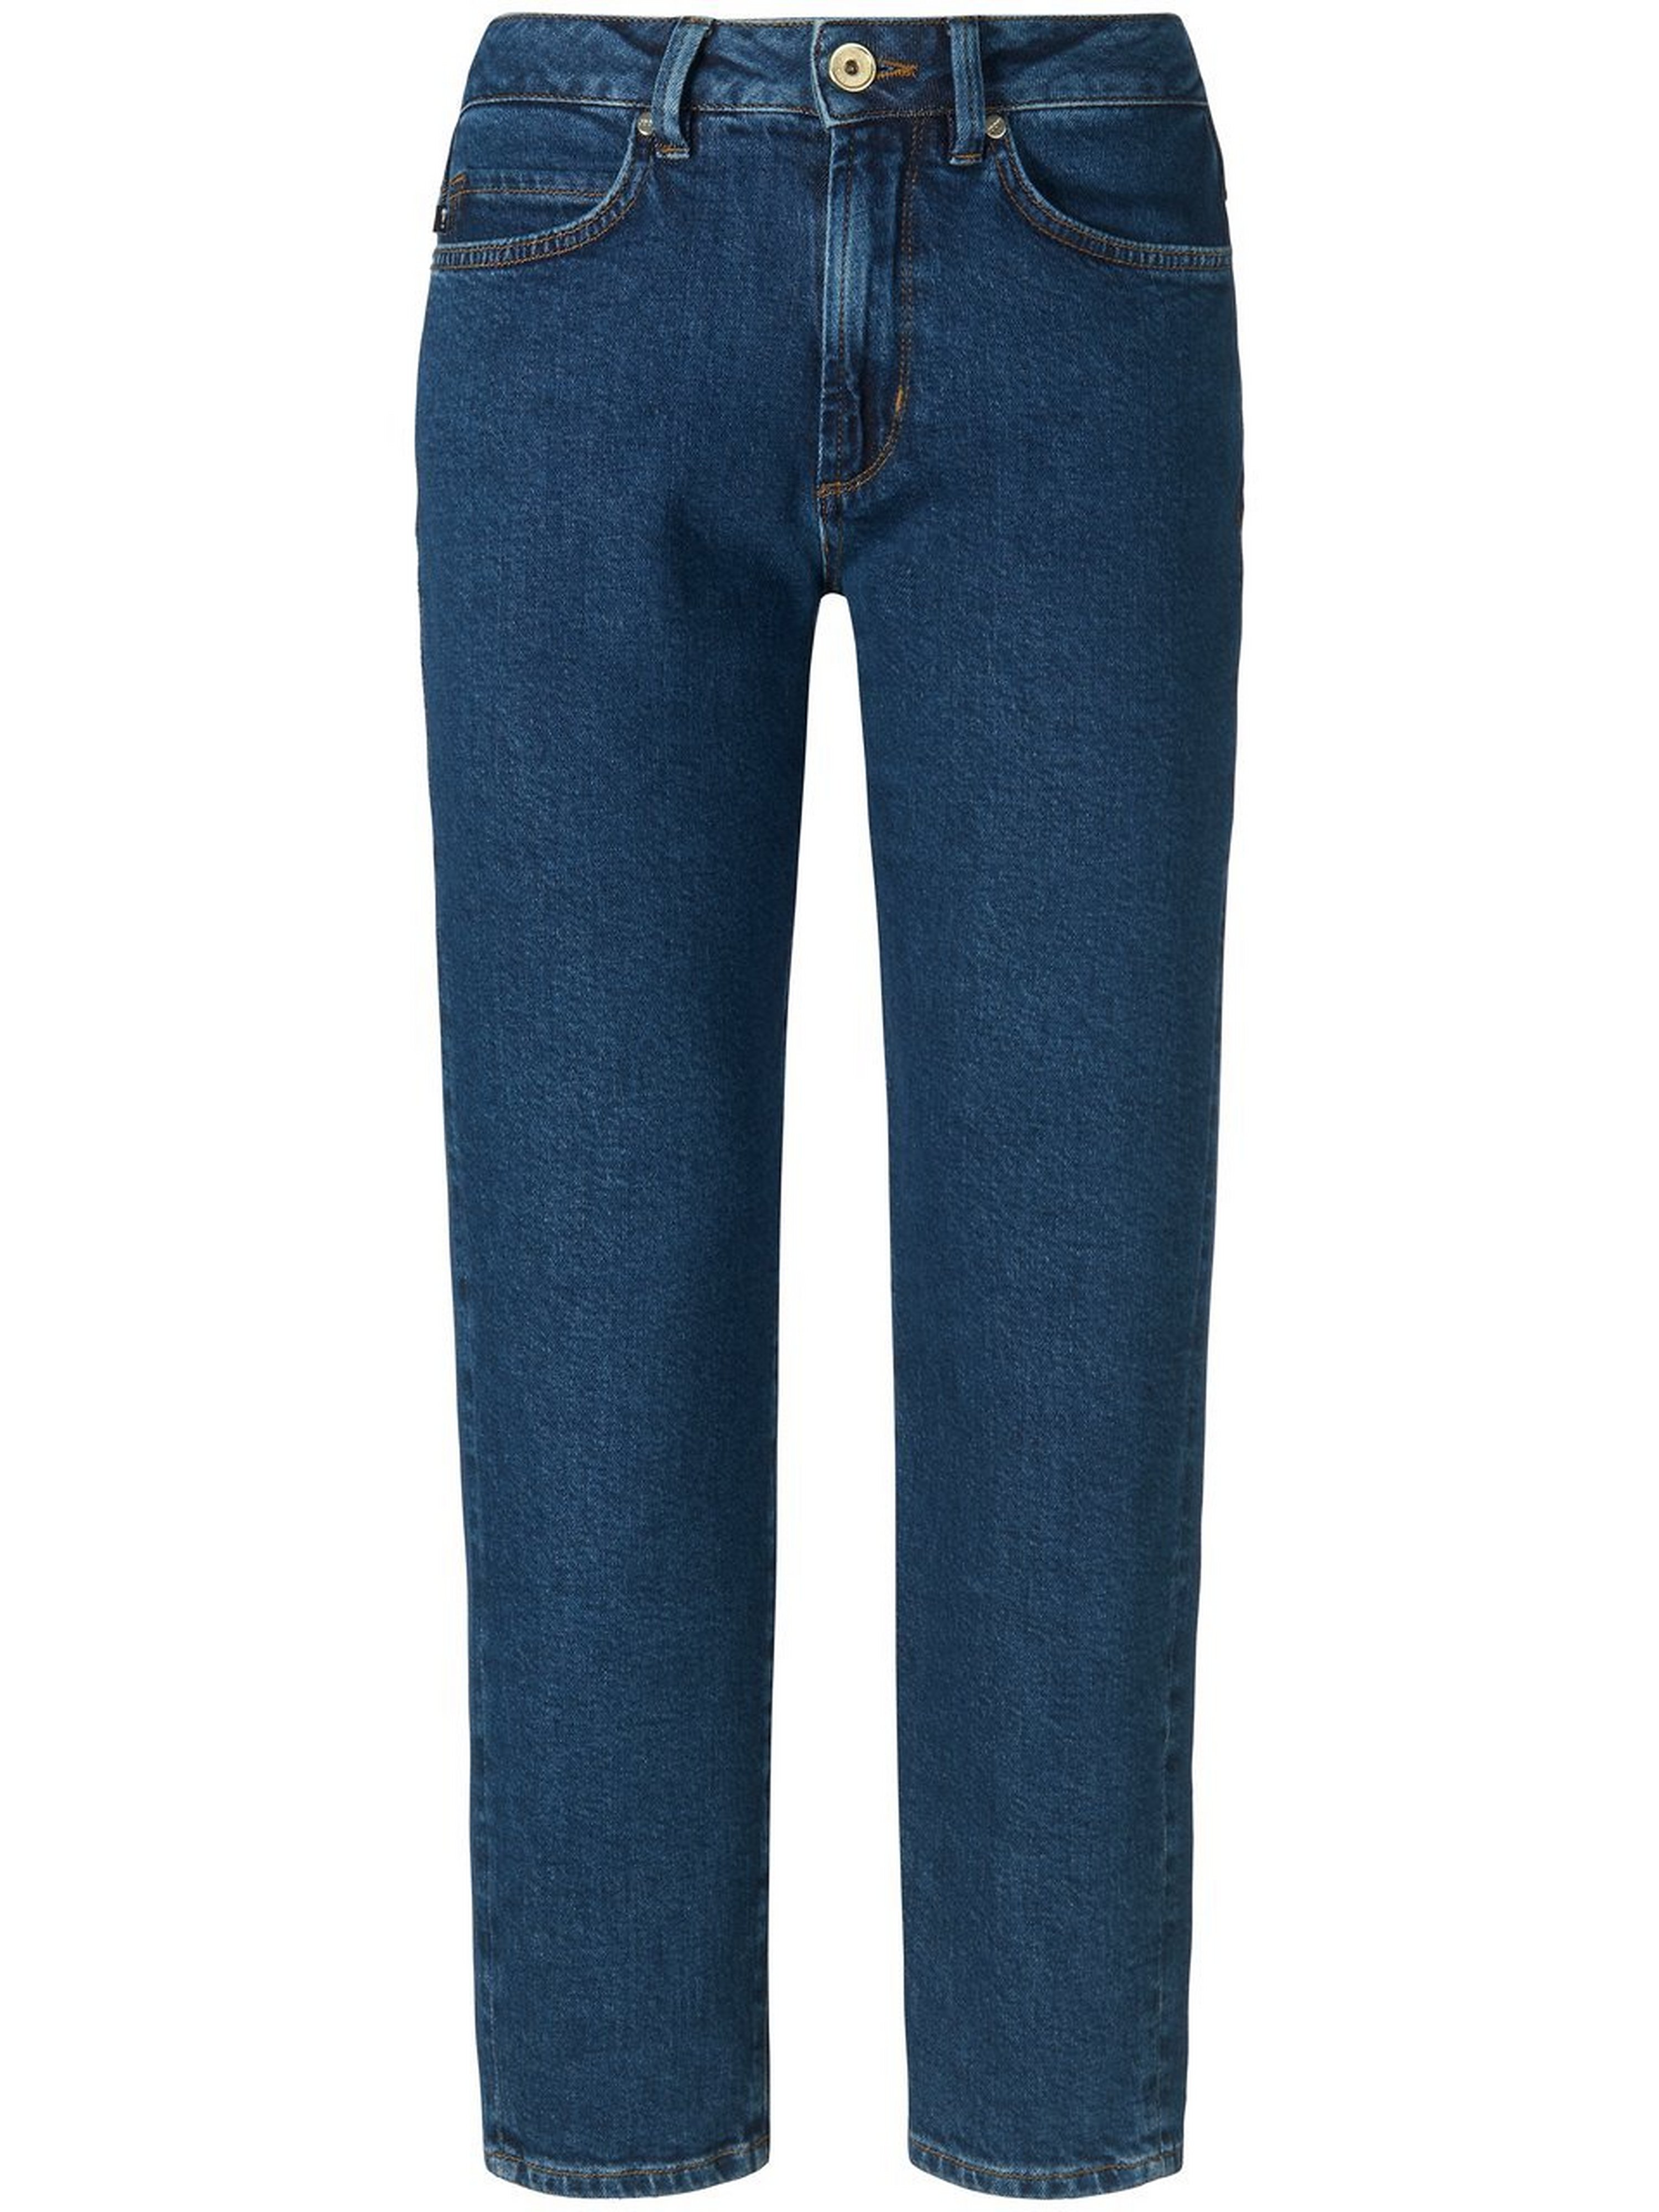 Enkellange jeans in five pocketsmodel Van Joop denim